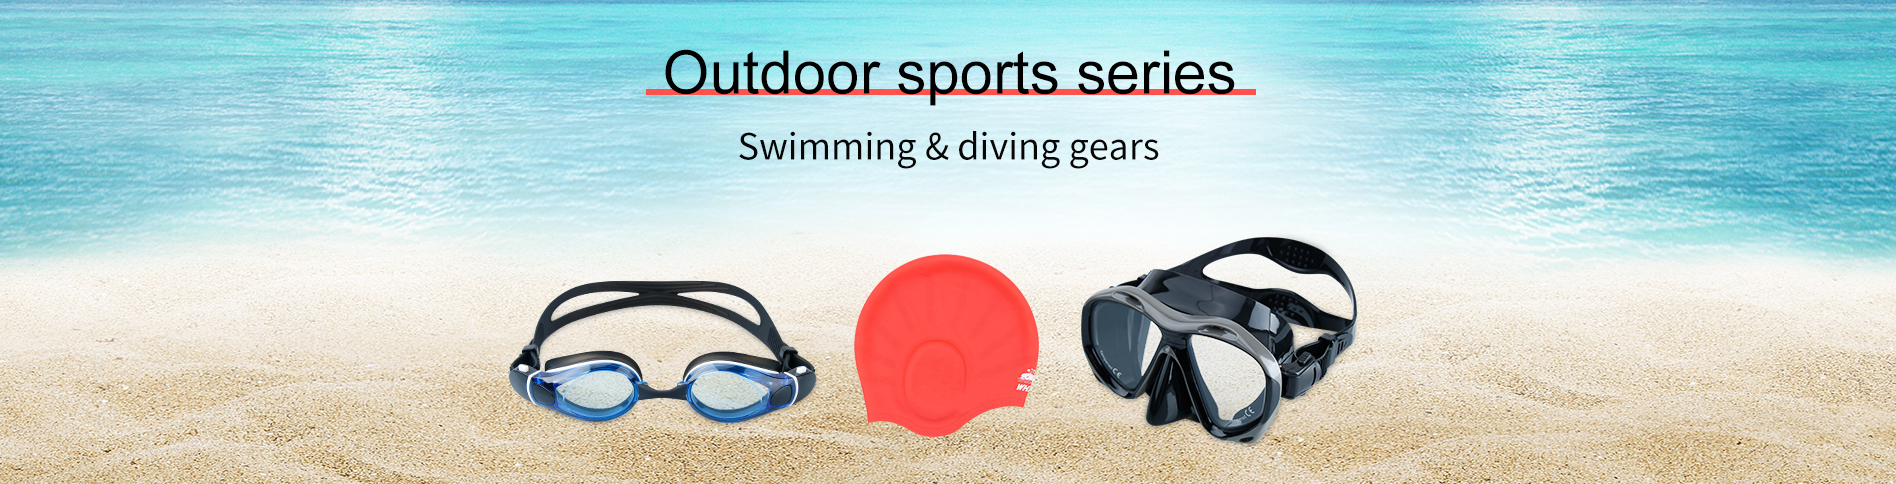 수영 고글, 수영 마스크, 다이빙 장비